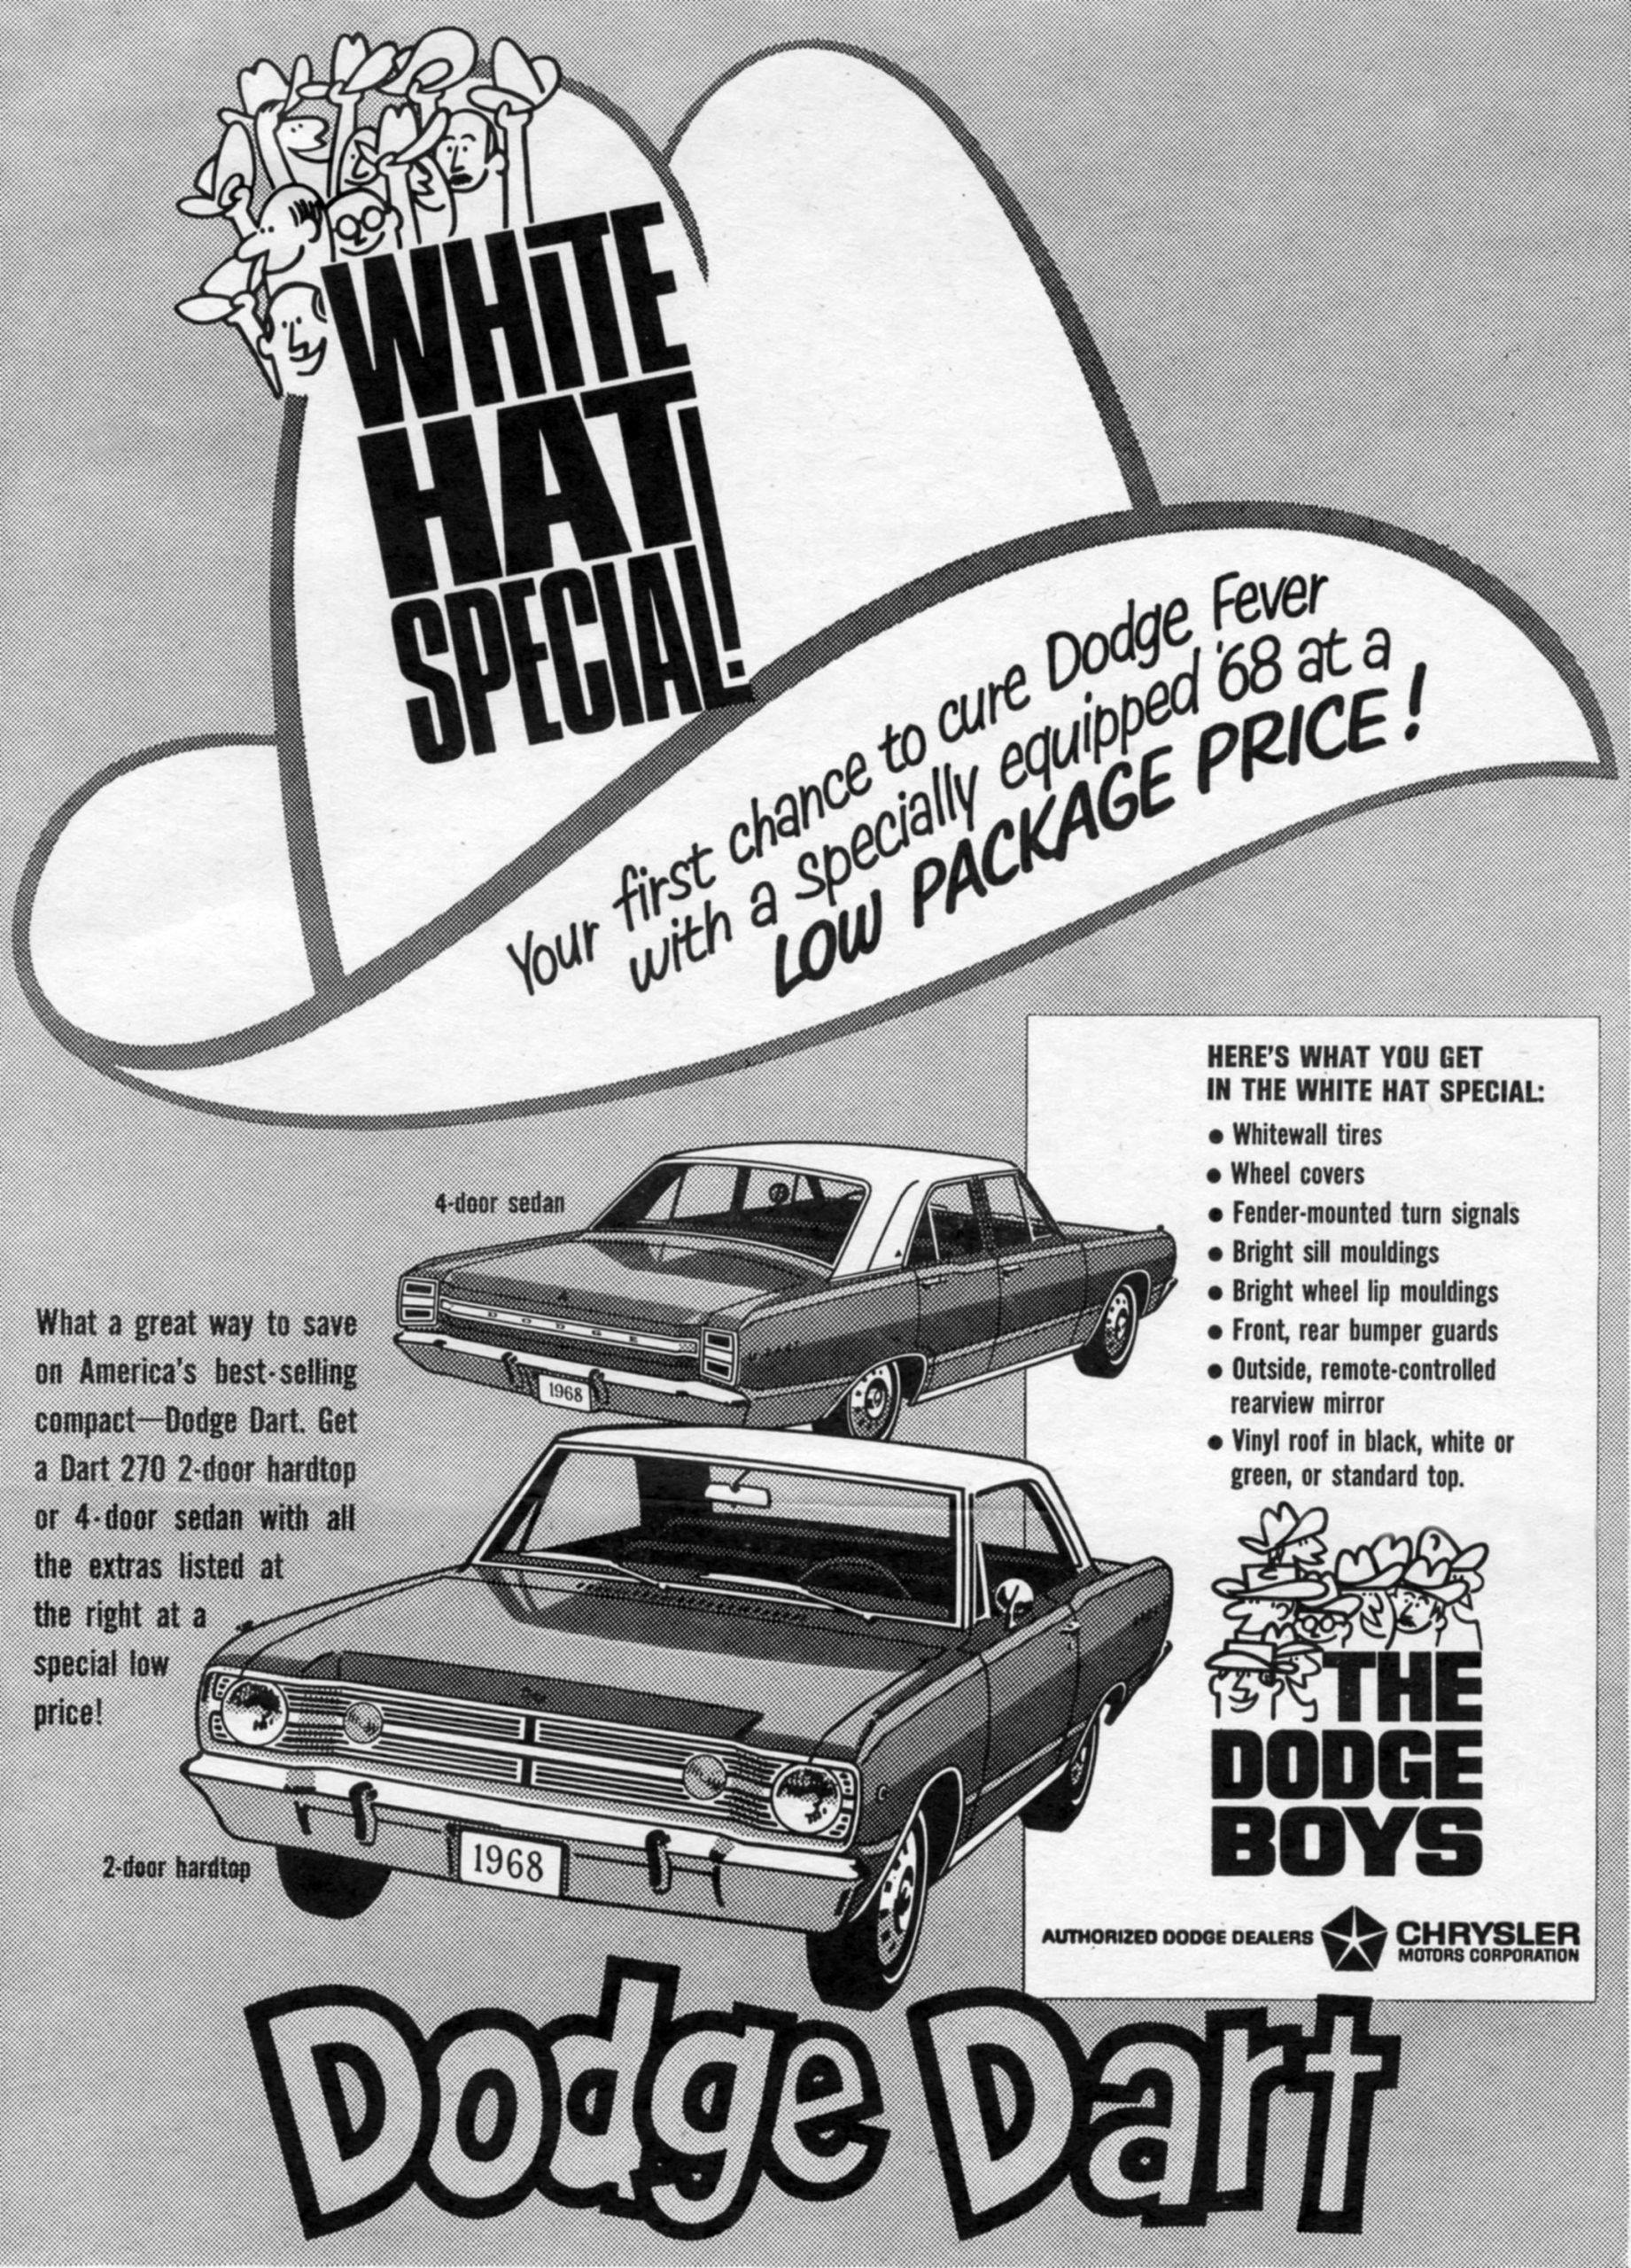 1968 Dodge Dart Vintage Car Ad